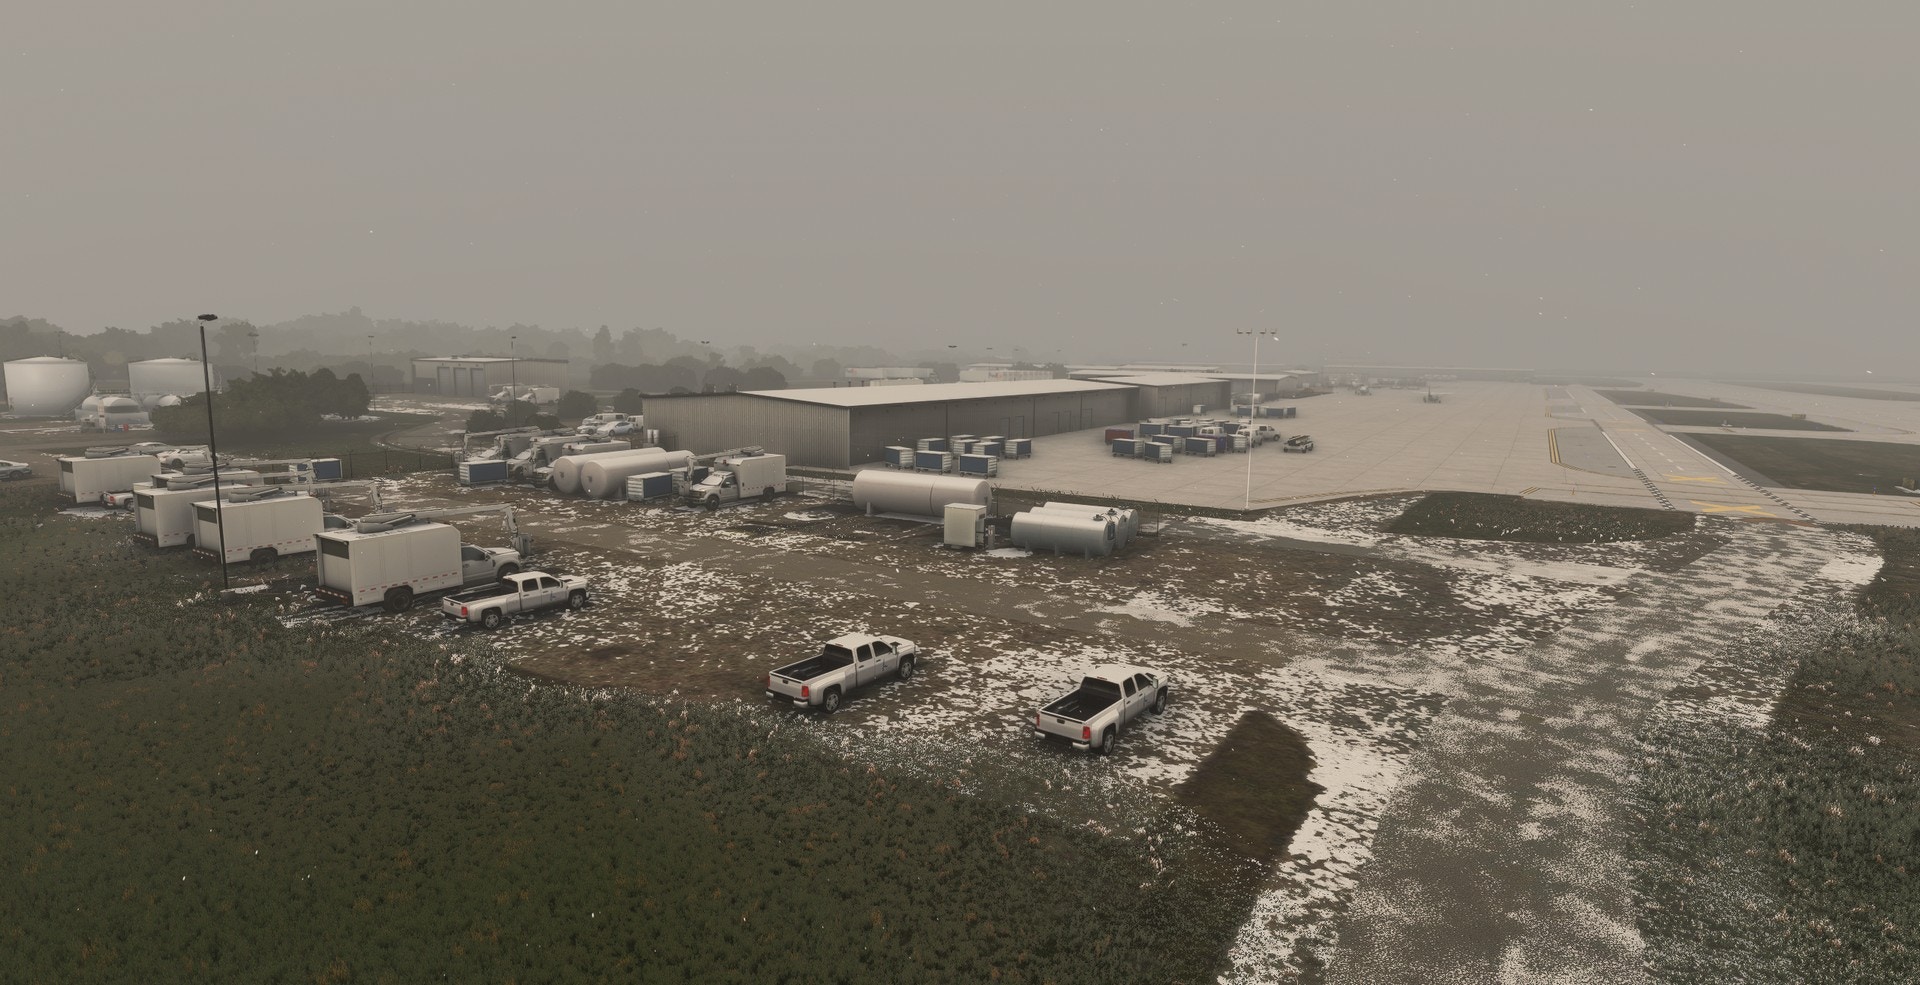 Verticalsim Updates Eppley Airfield for MSFS